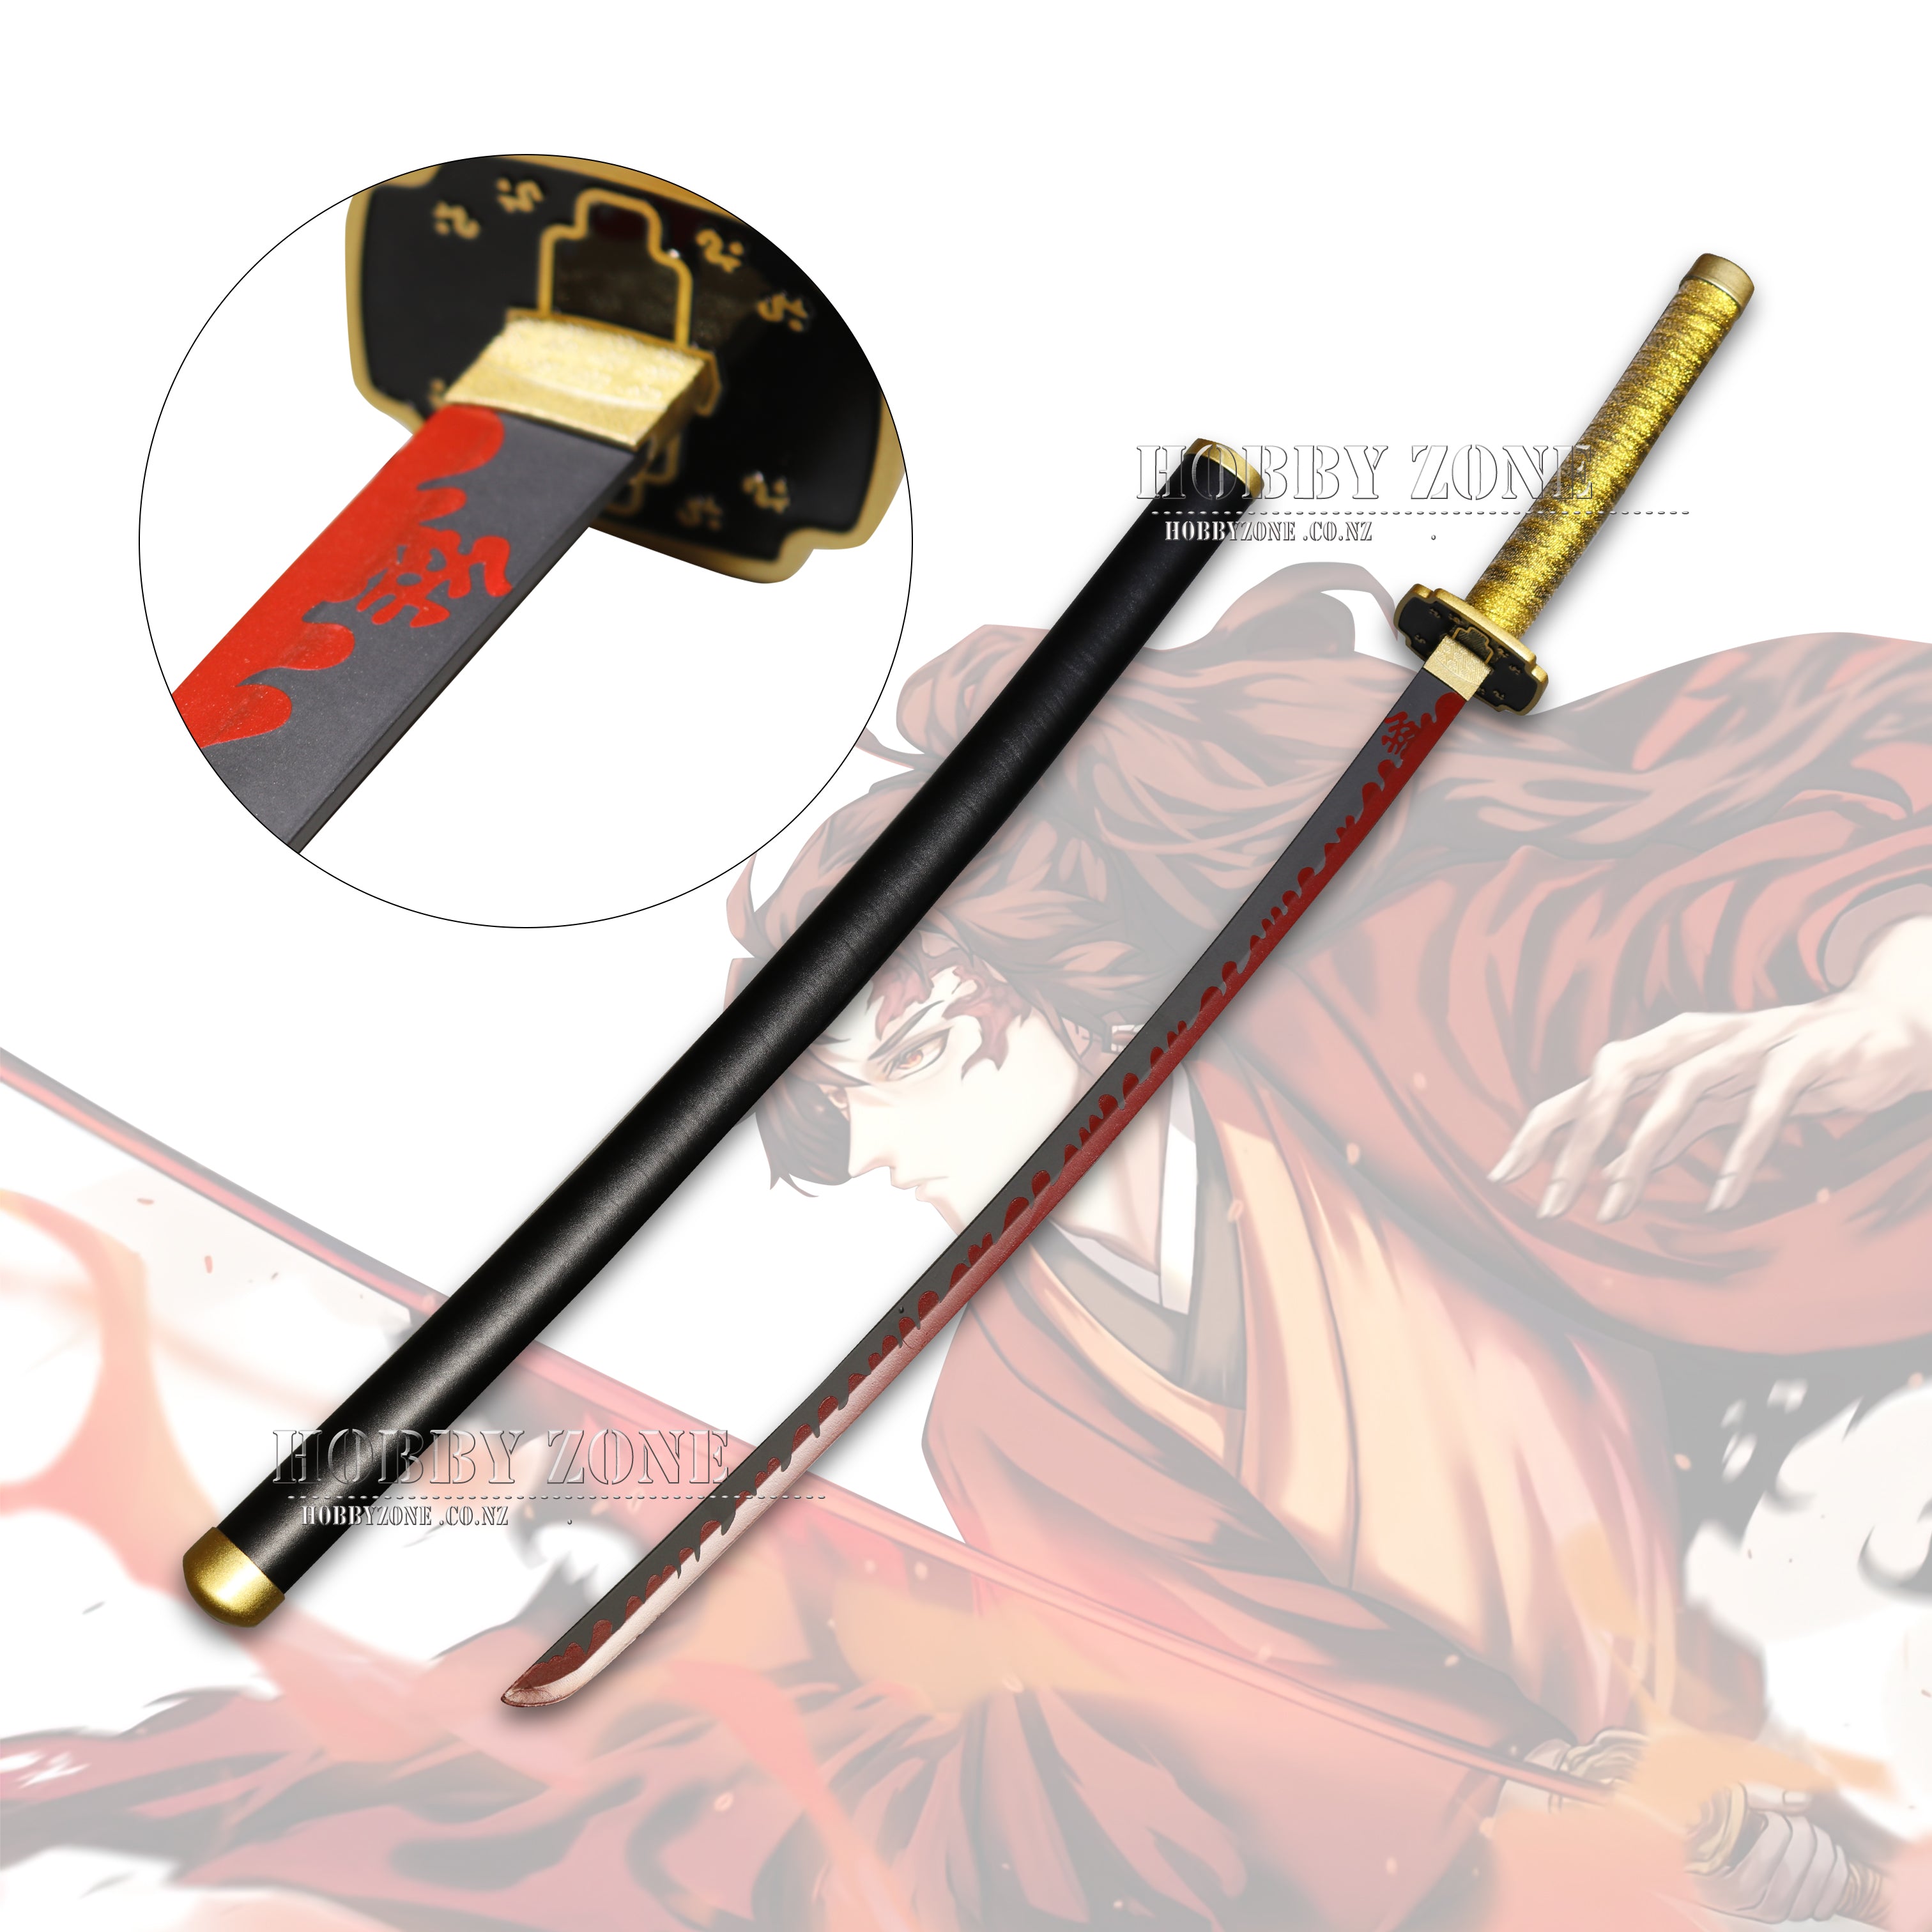 Demon Slayer Swords: Complete List of Nichirin Swords, Colors, and